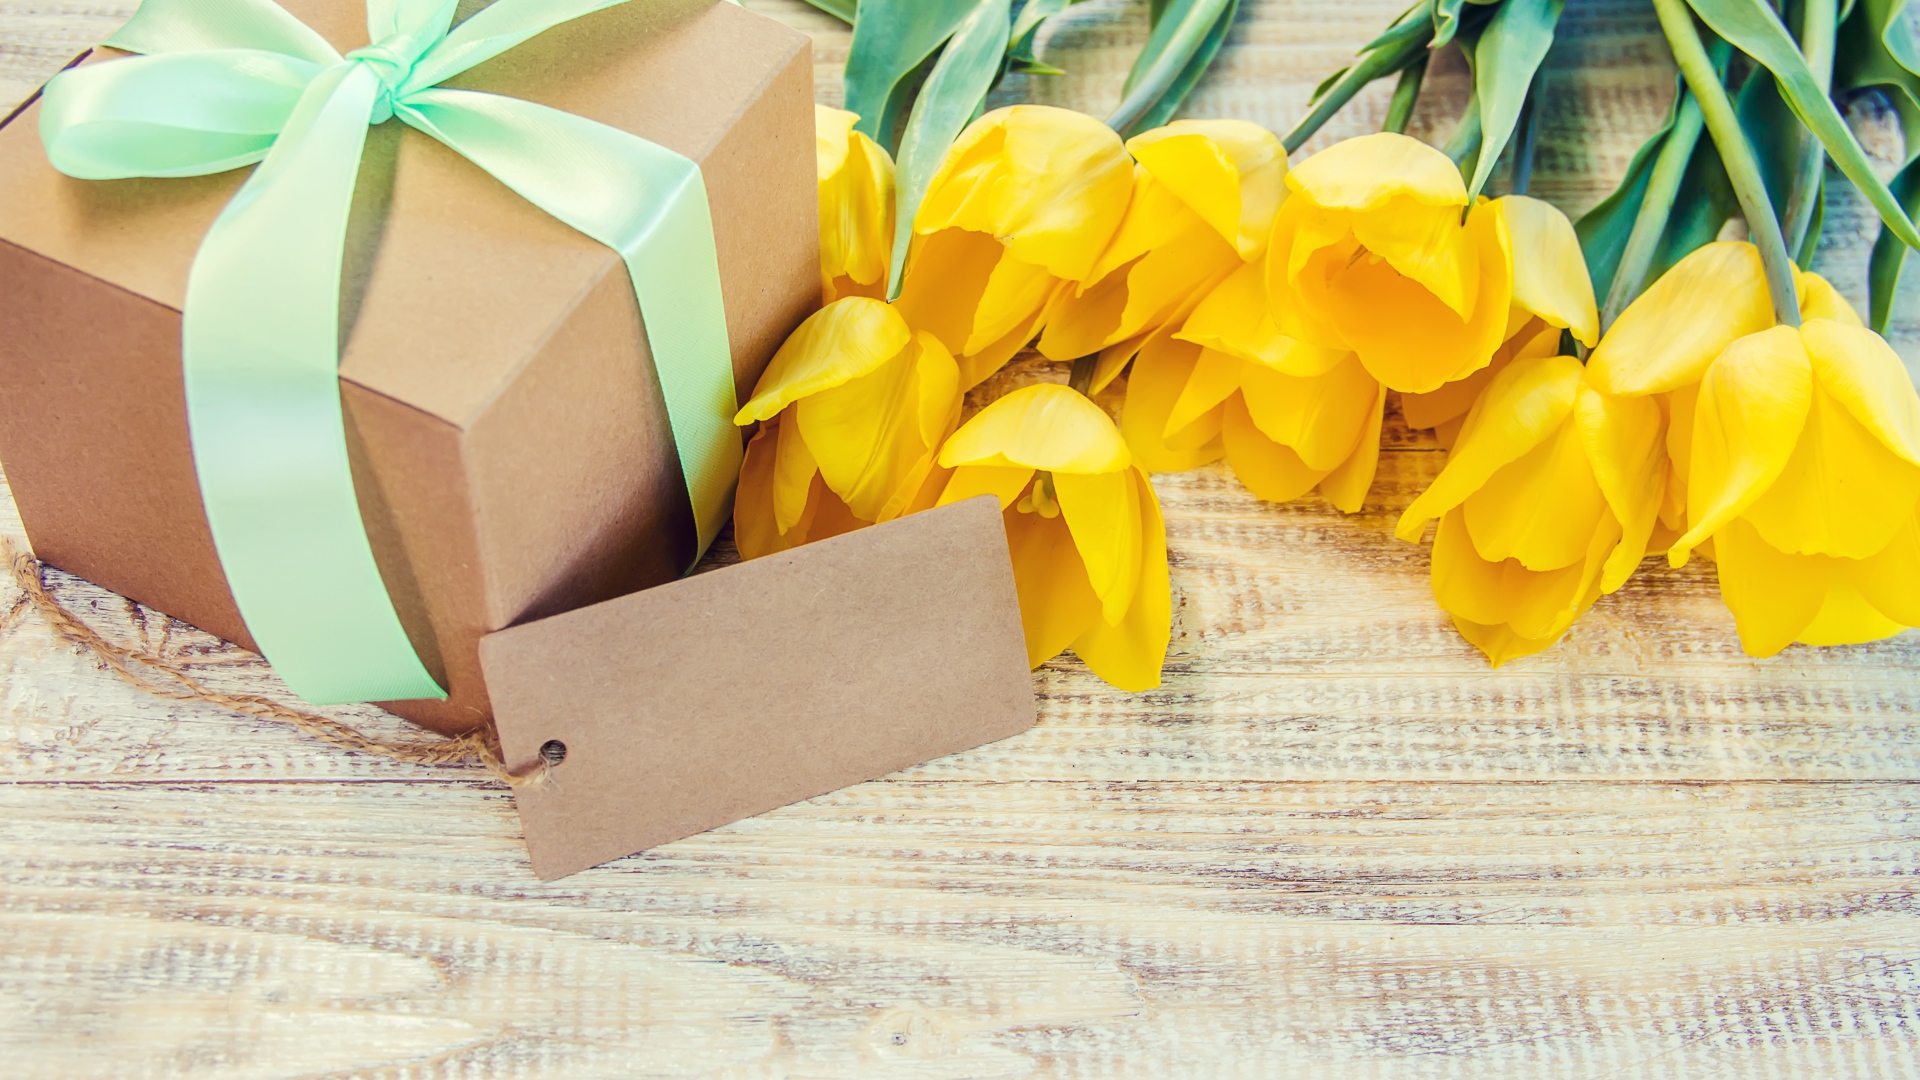 Желтые тюльпаны и подарок для любимой на 8 марта